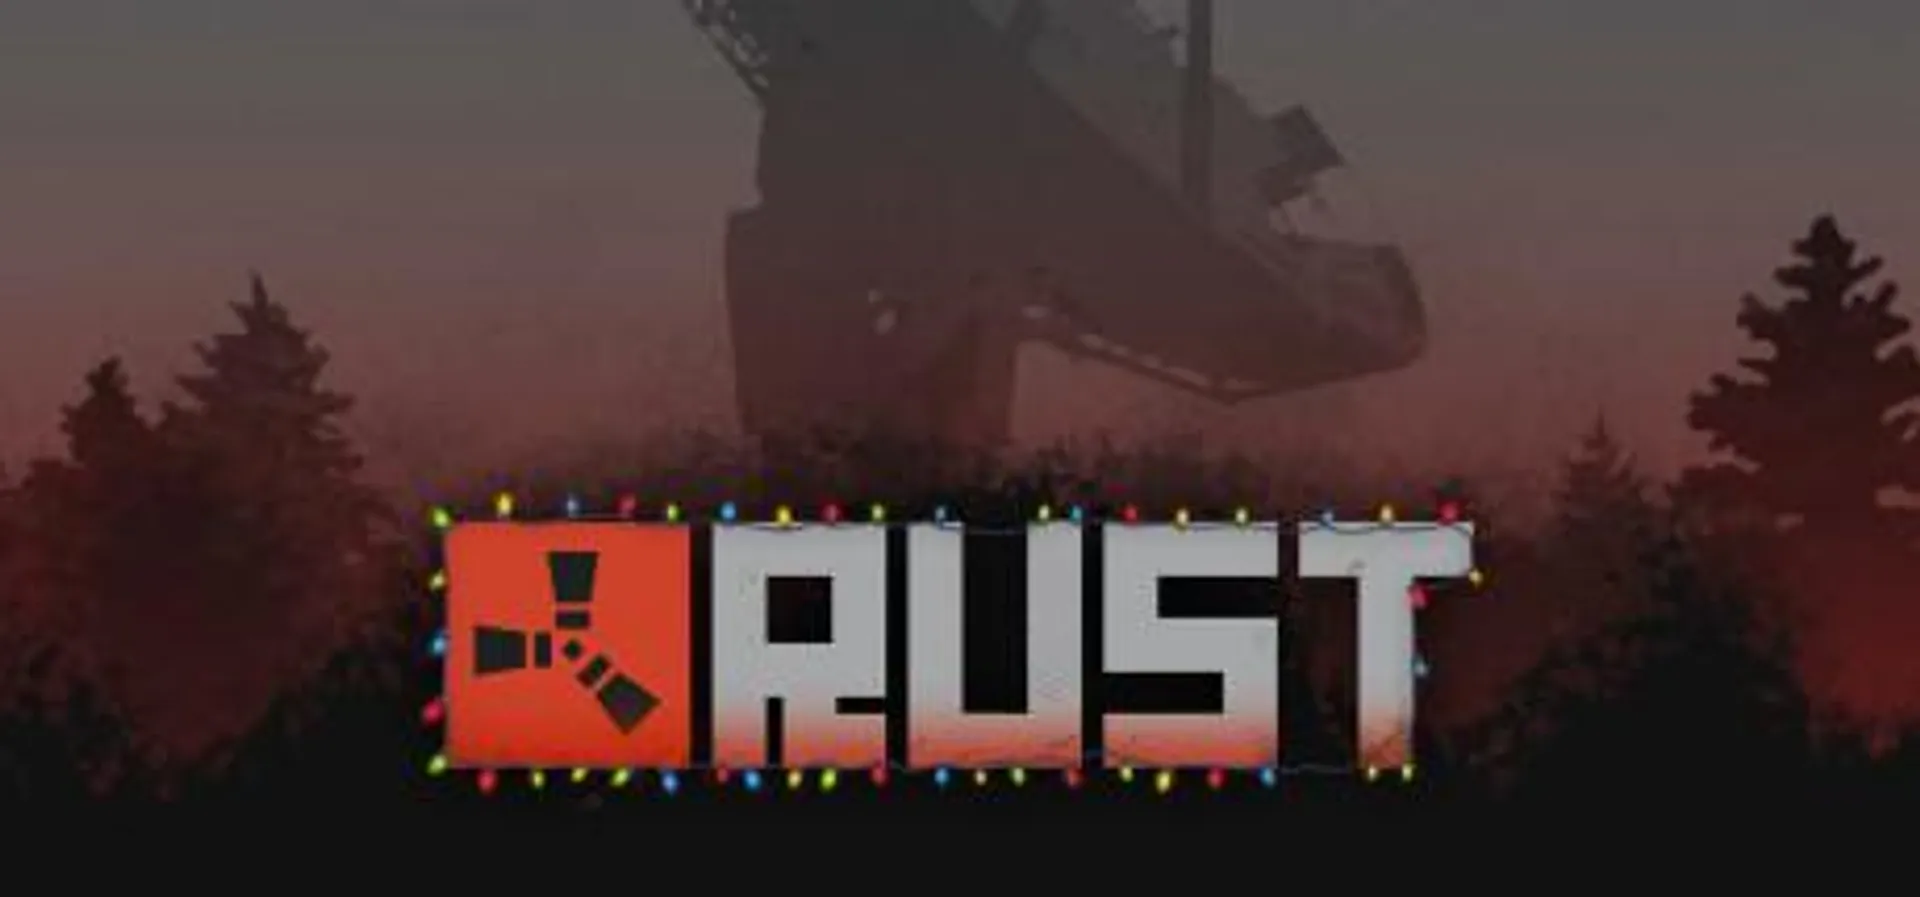 Save 33% on Rust on Steam